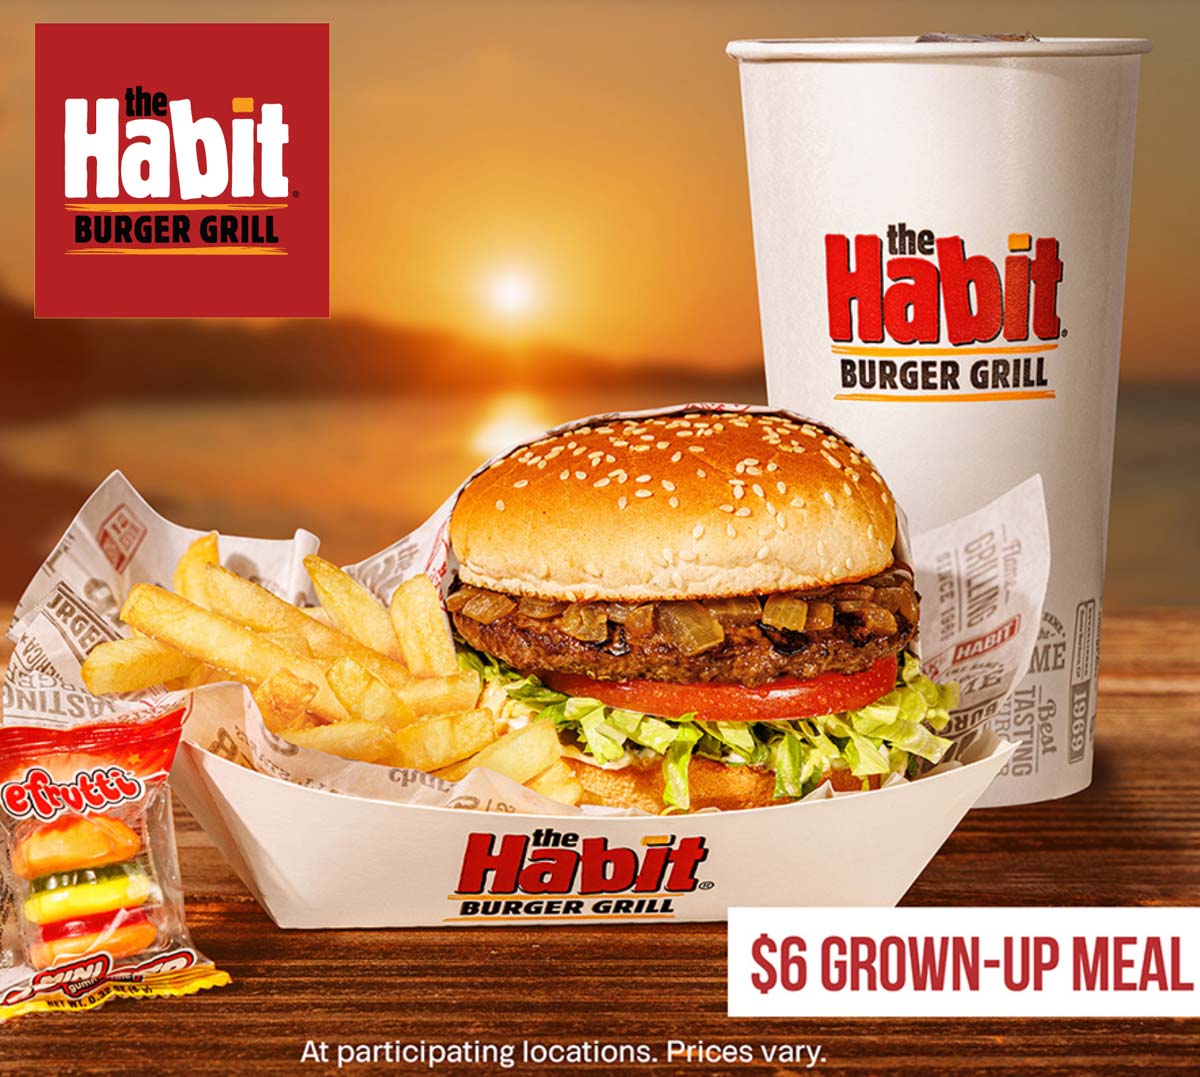 Habit Burger restaurants Coupon  Burger + fries + drink = $6 grown-up meal at The Habit Burger Grill #habitburger 